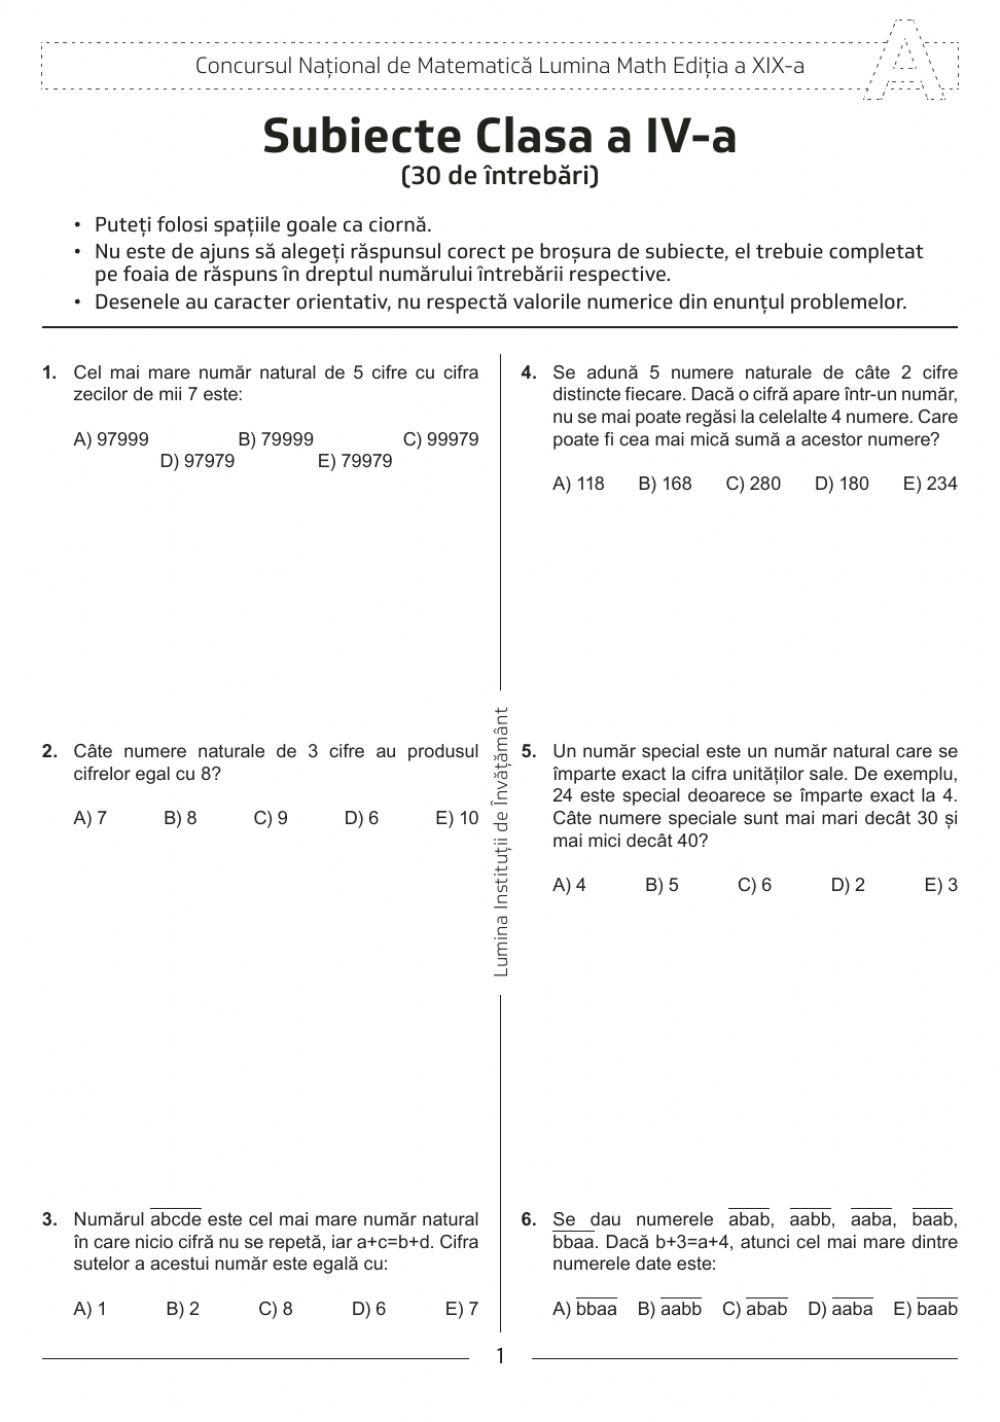 Subiecte LuminaMath-2015 worksheet | Live Worksheets